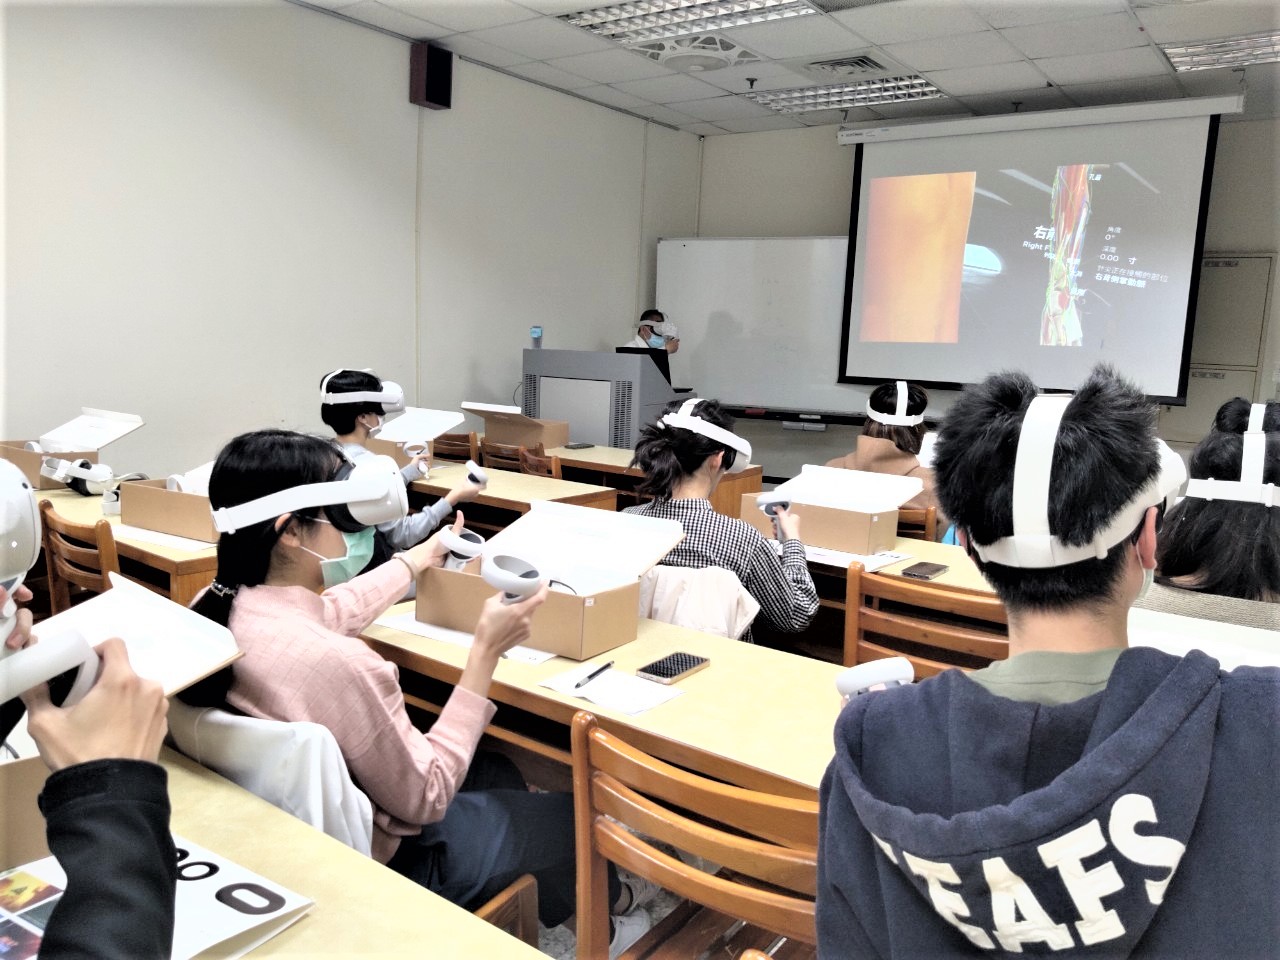 建置「VR針灸教學虛擬系統」  有助提升中醫藥大學學習成效